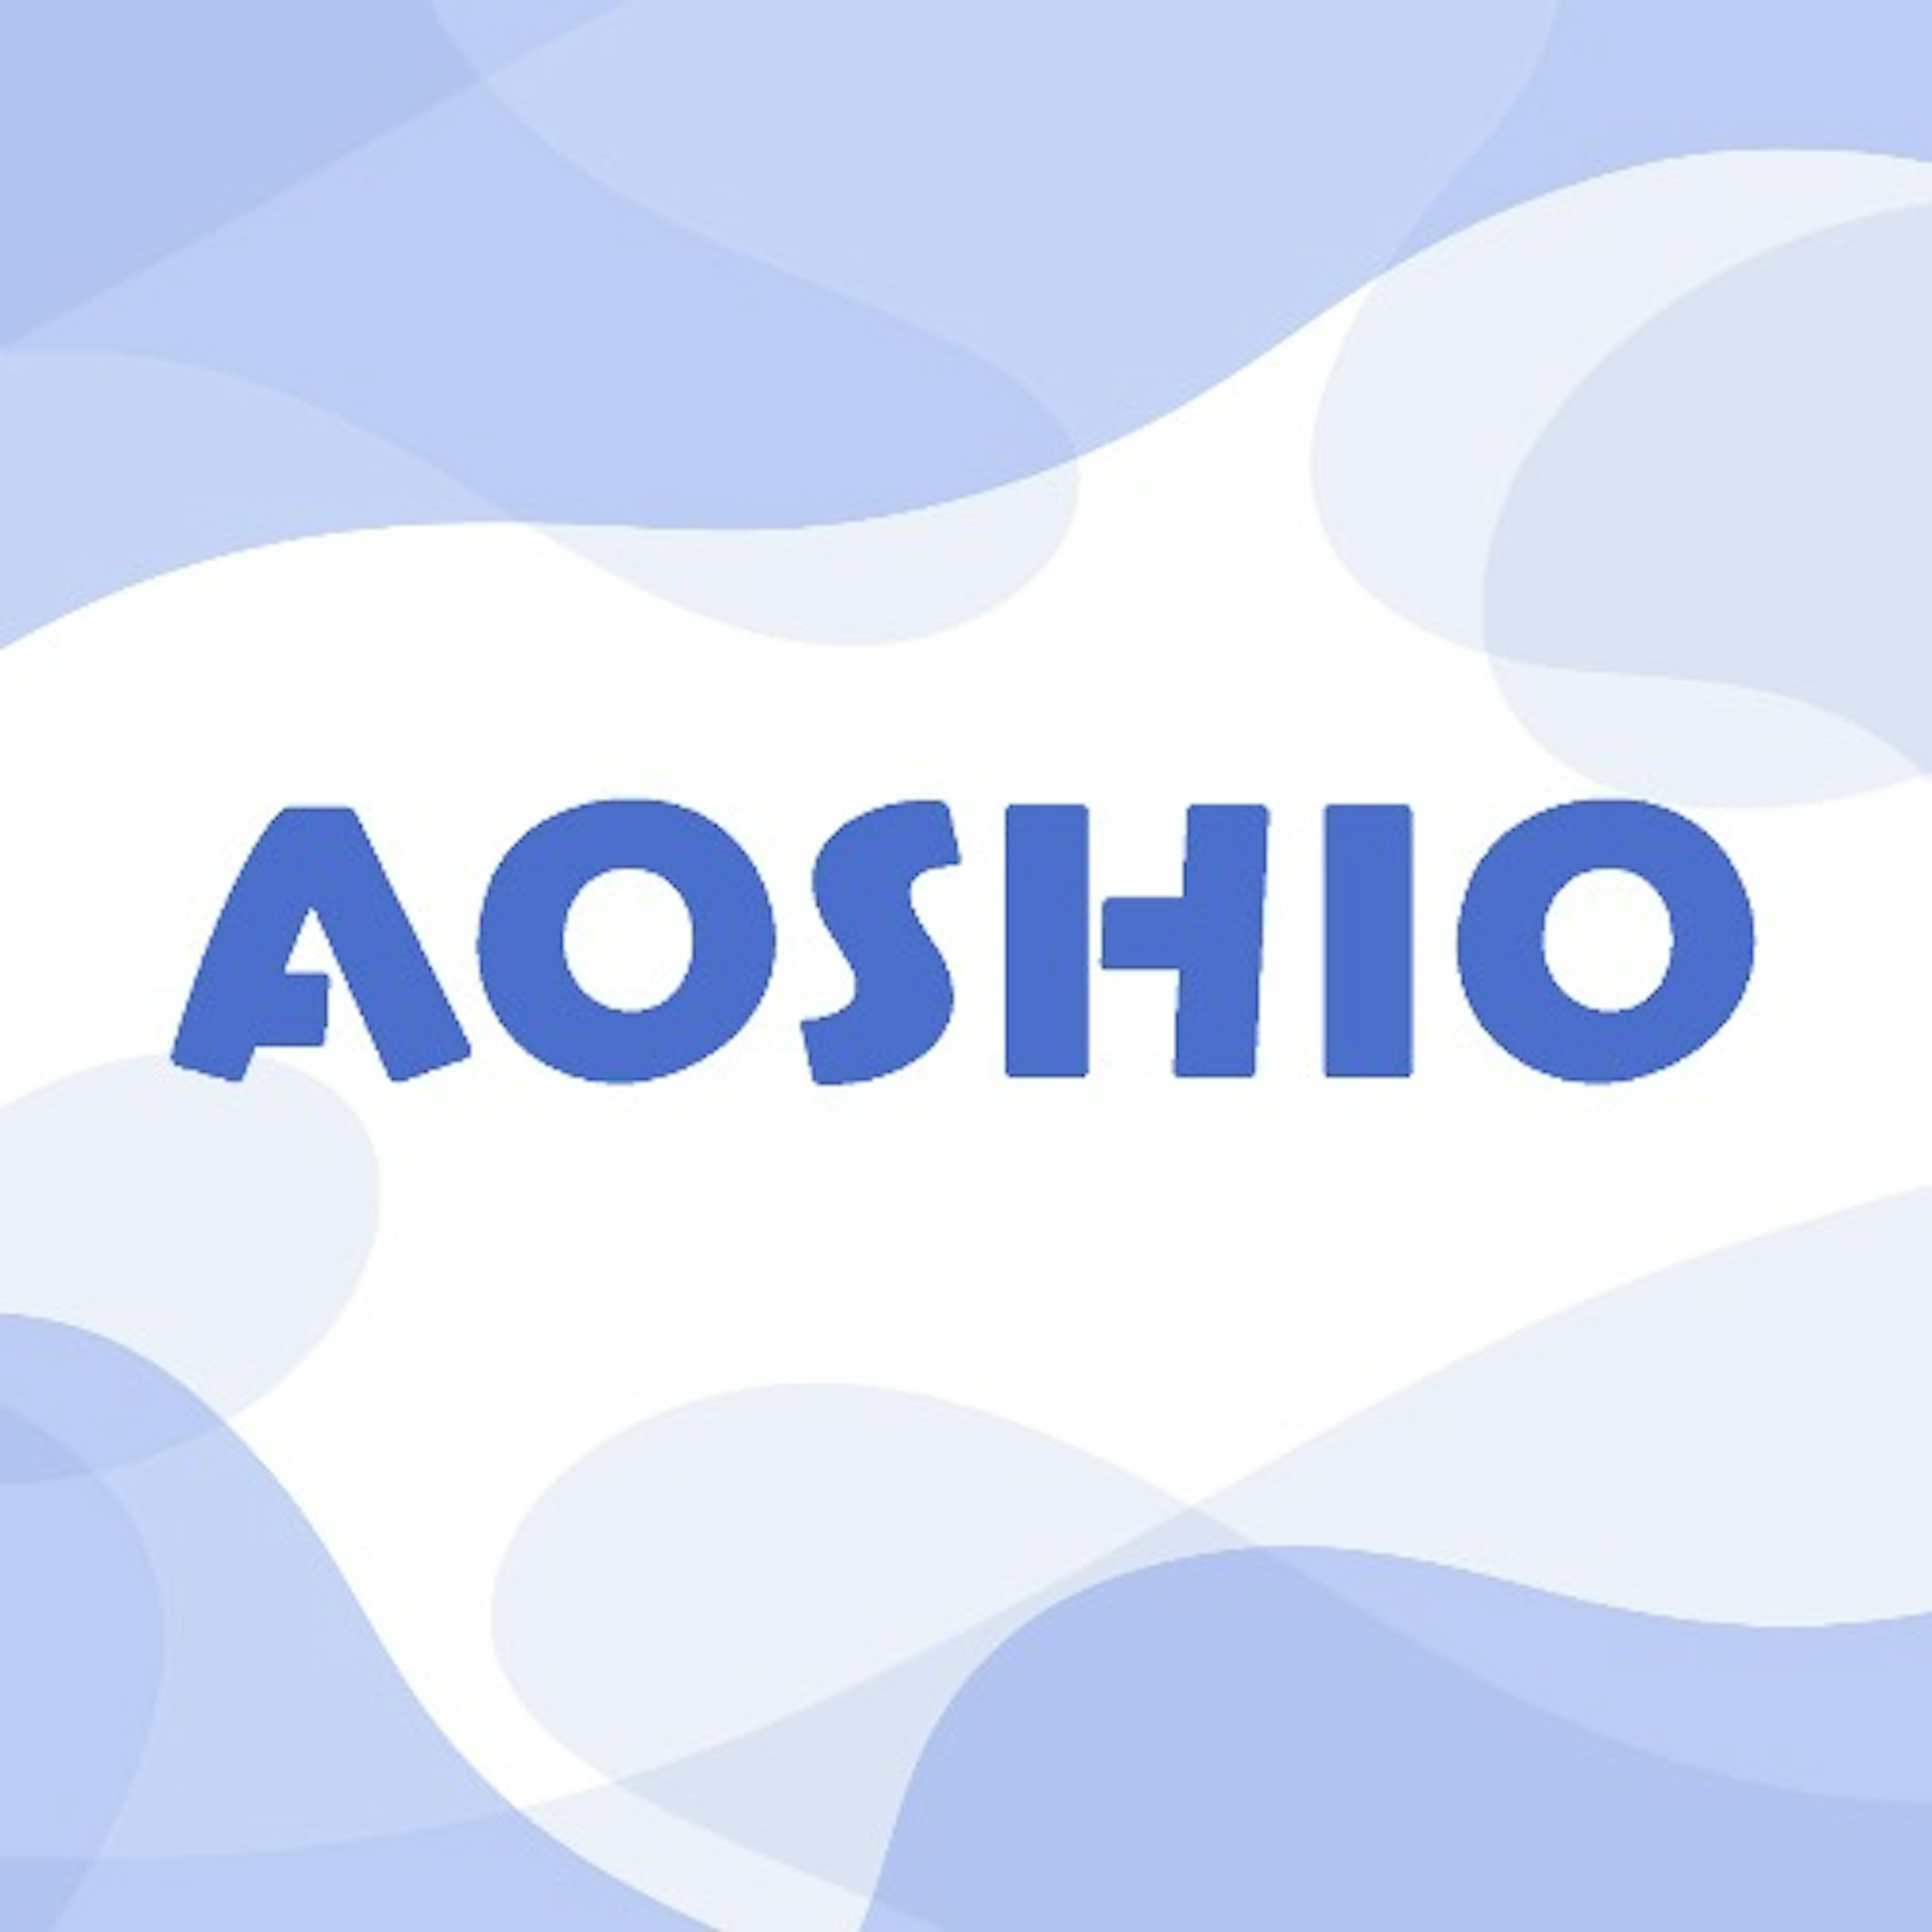 AOSHIO あおしおのアイコン画像